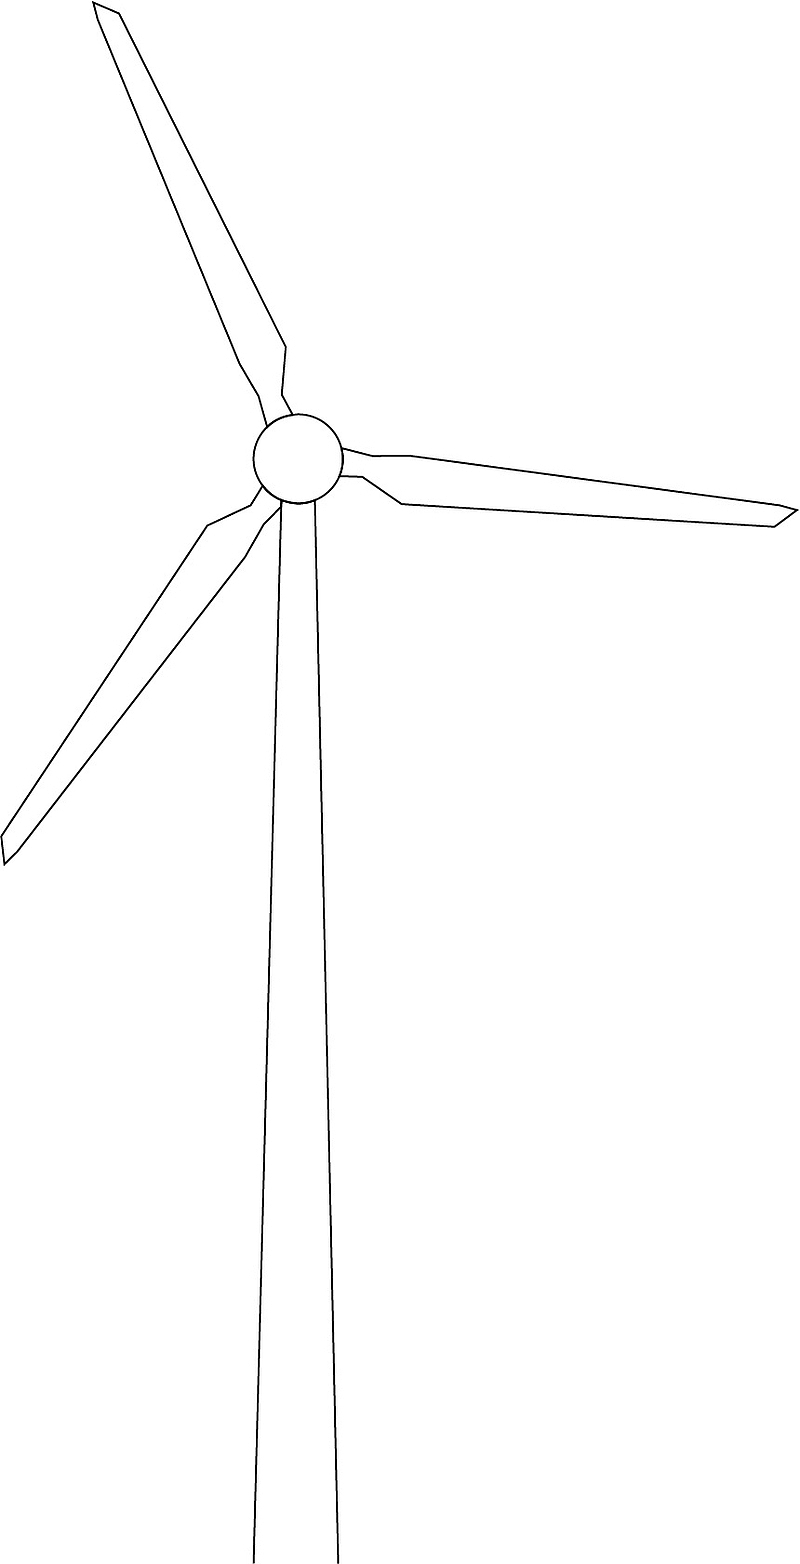 风力发电风机线稿